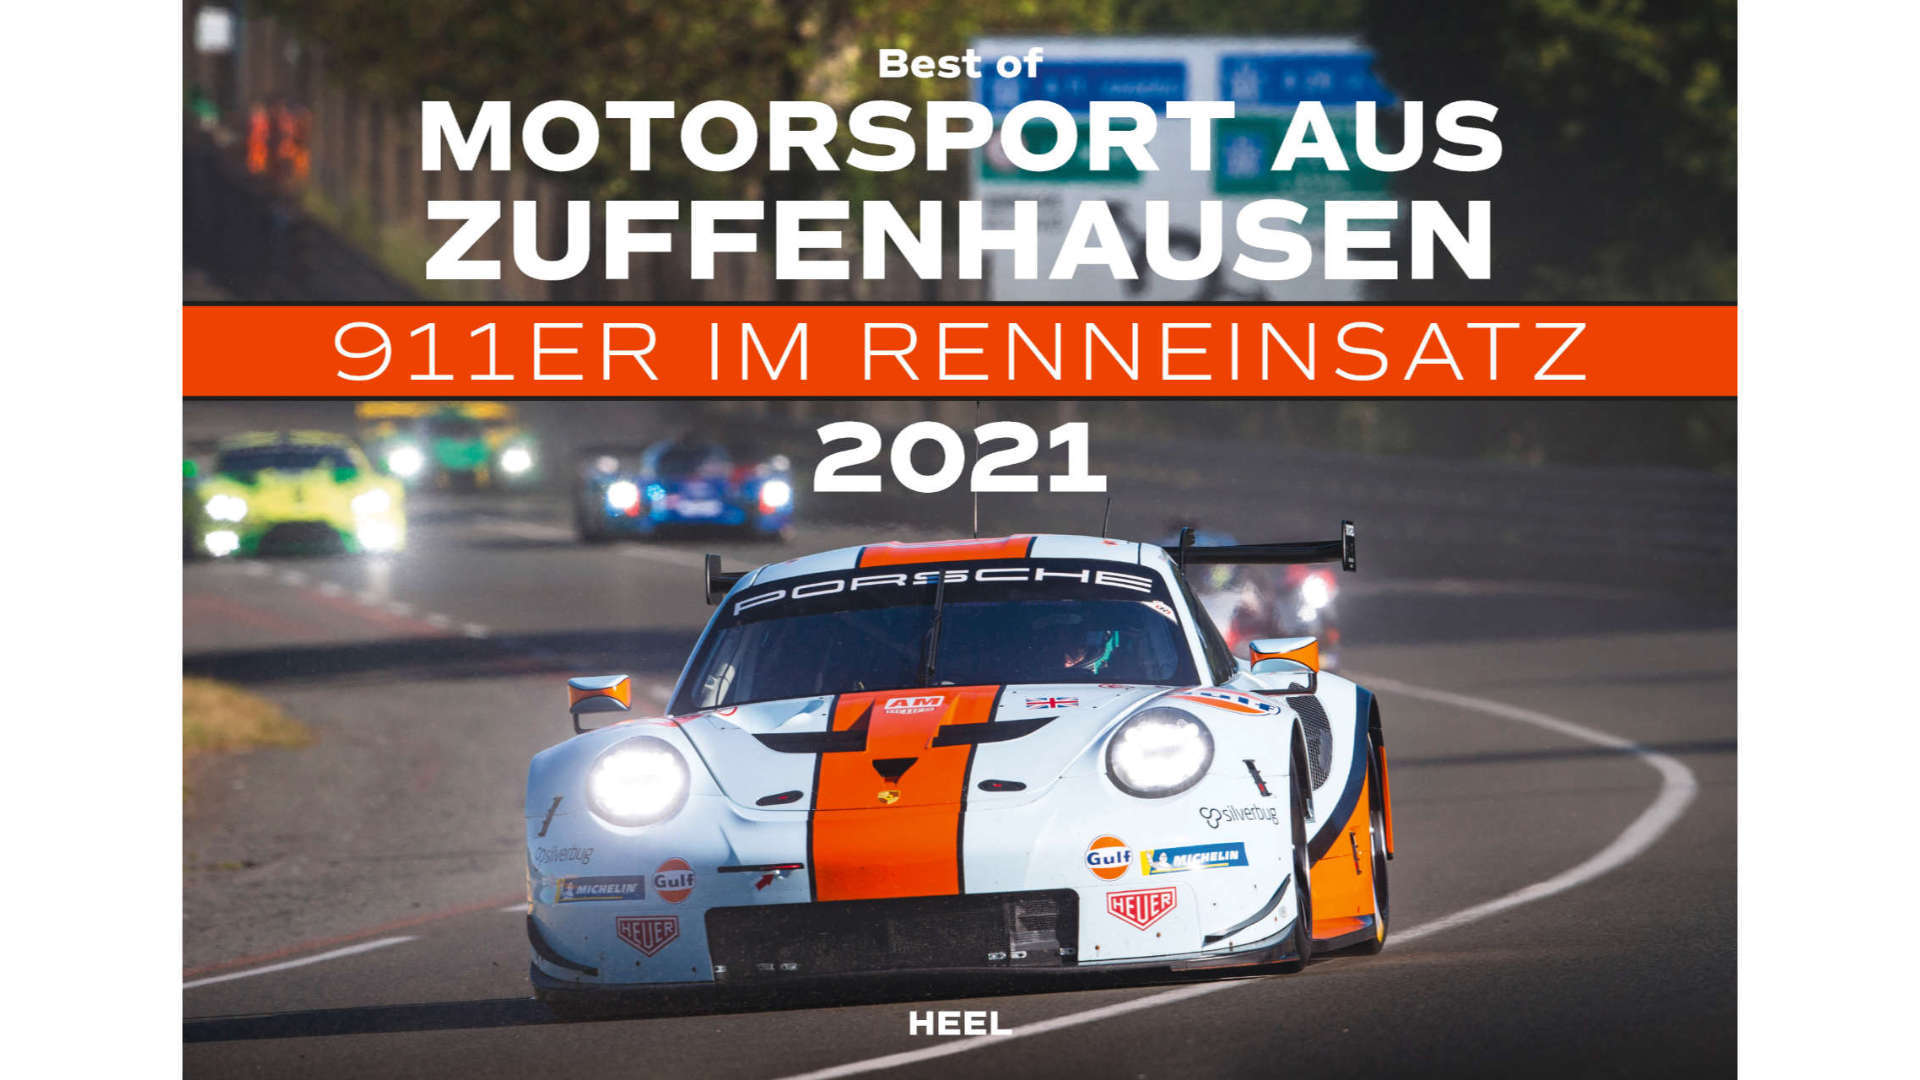 Best of Motorsport aus Zuffenhausen